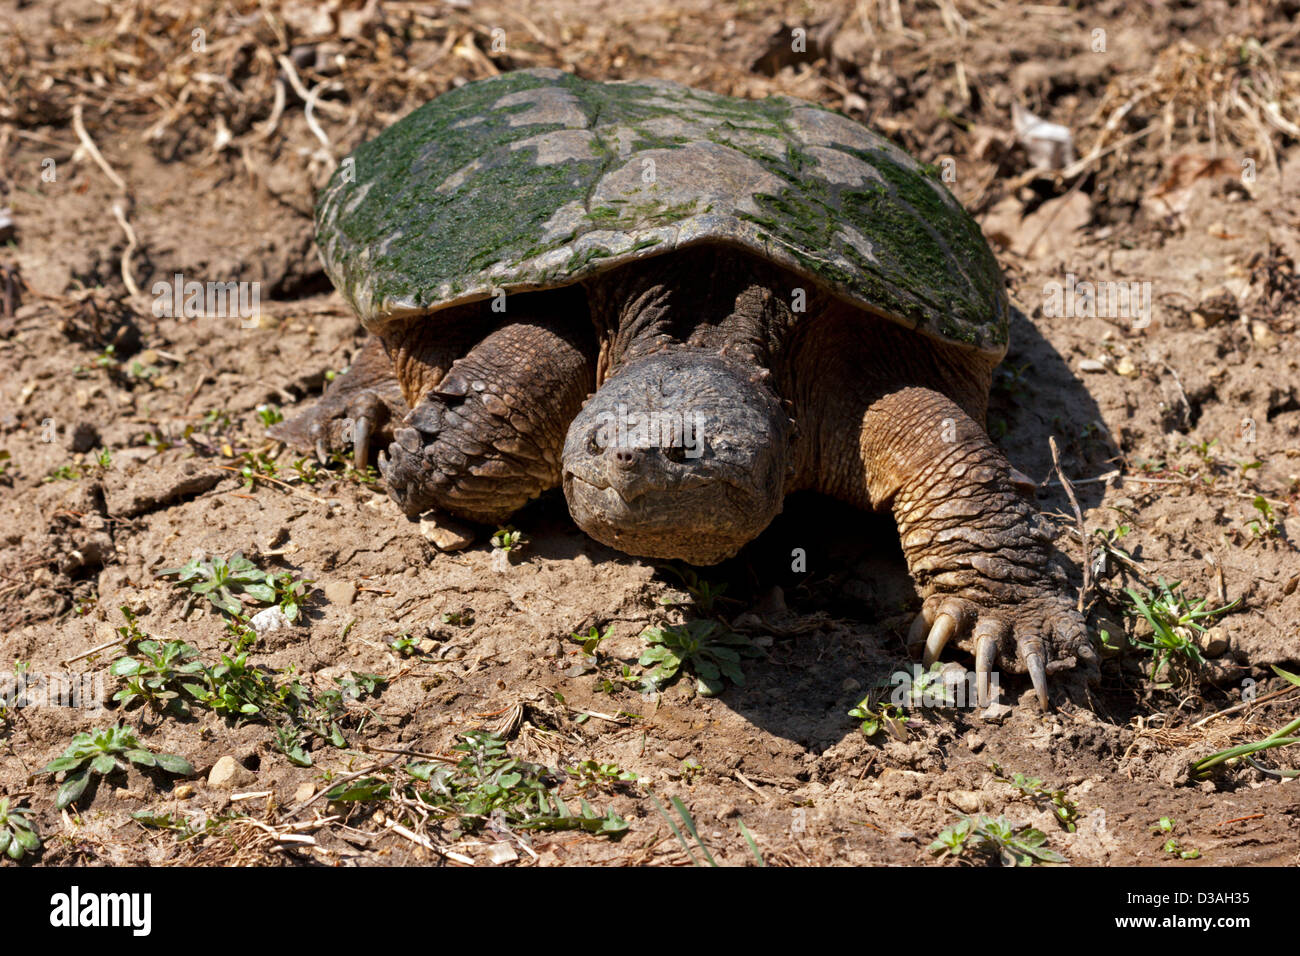 Schnappschildkröte großes Reptil Stockfoto